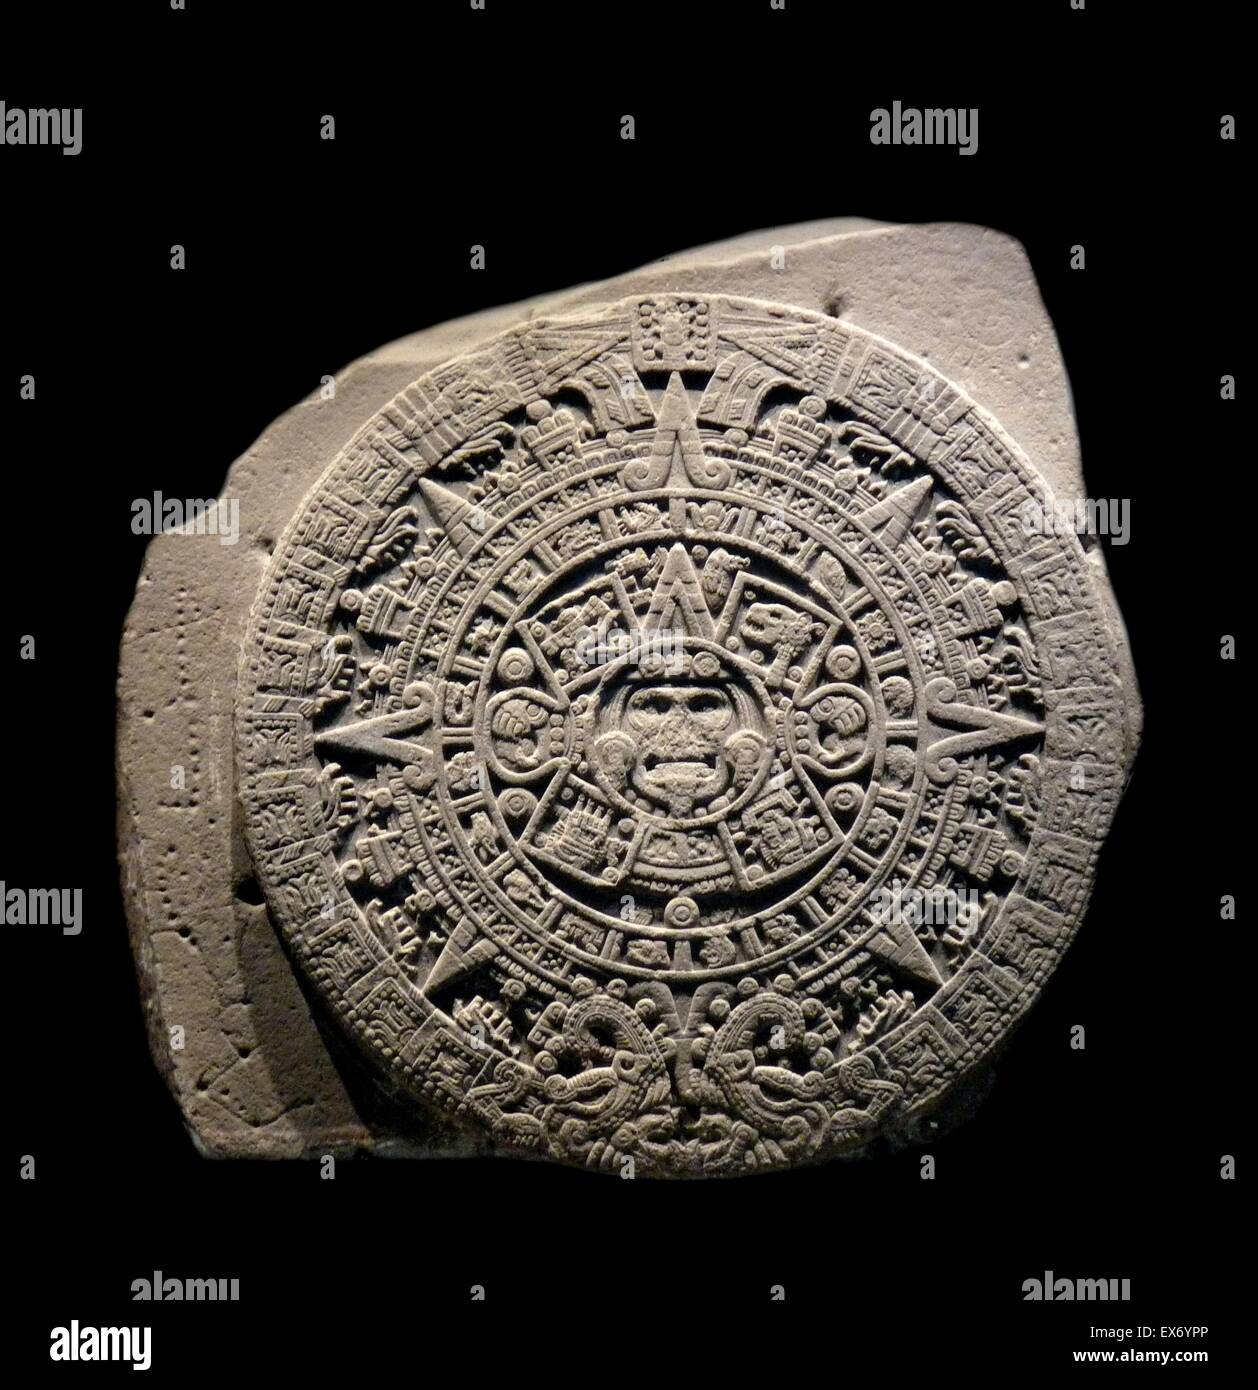 Der aztekische Kalender Stein, Sonnenstein oder Stein der fünf Epochen ist ein späten Post-Klassiker mexikanische Skulptur in das nationale Museum für Anthropologie, Mexiko-Stadt gespeichert und ist vielleicht das berühmteste Werk des aztekischen Skulptur. Ca. 15. Jh. Stockfoto